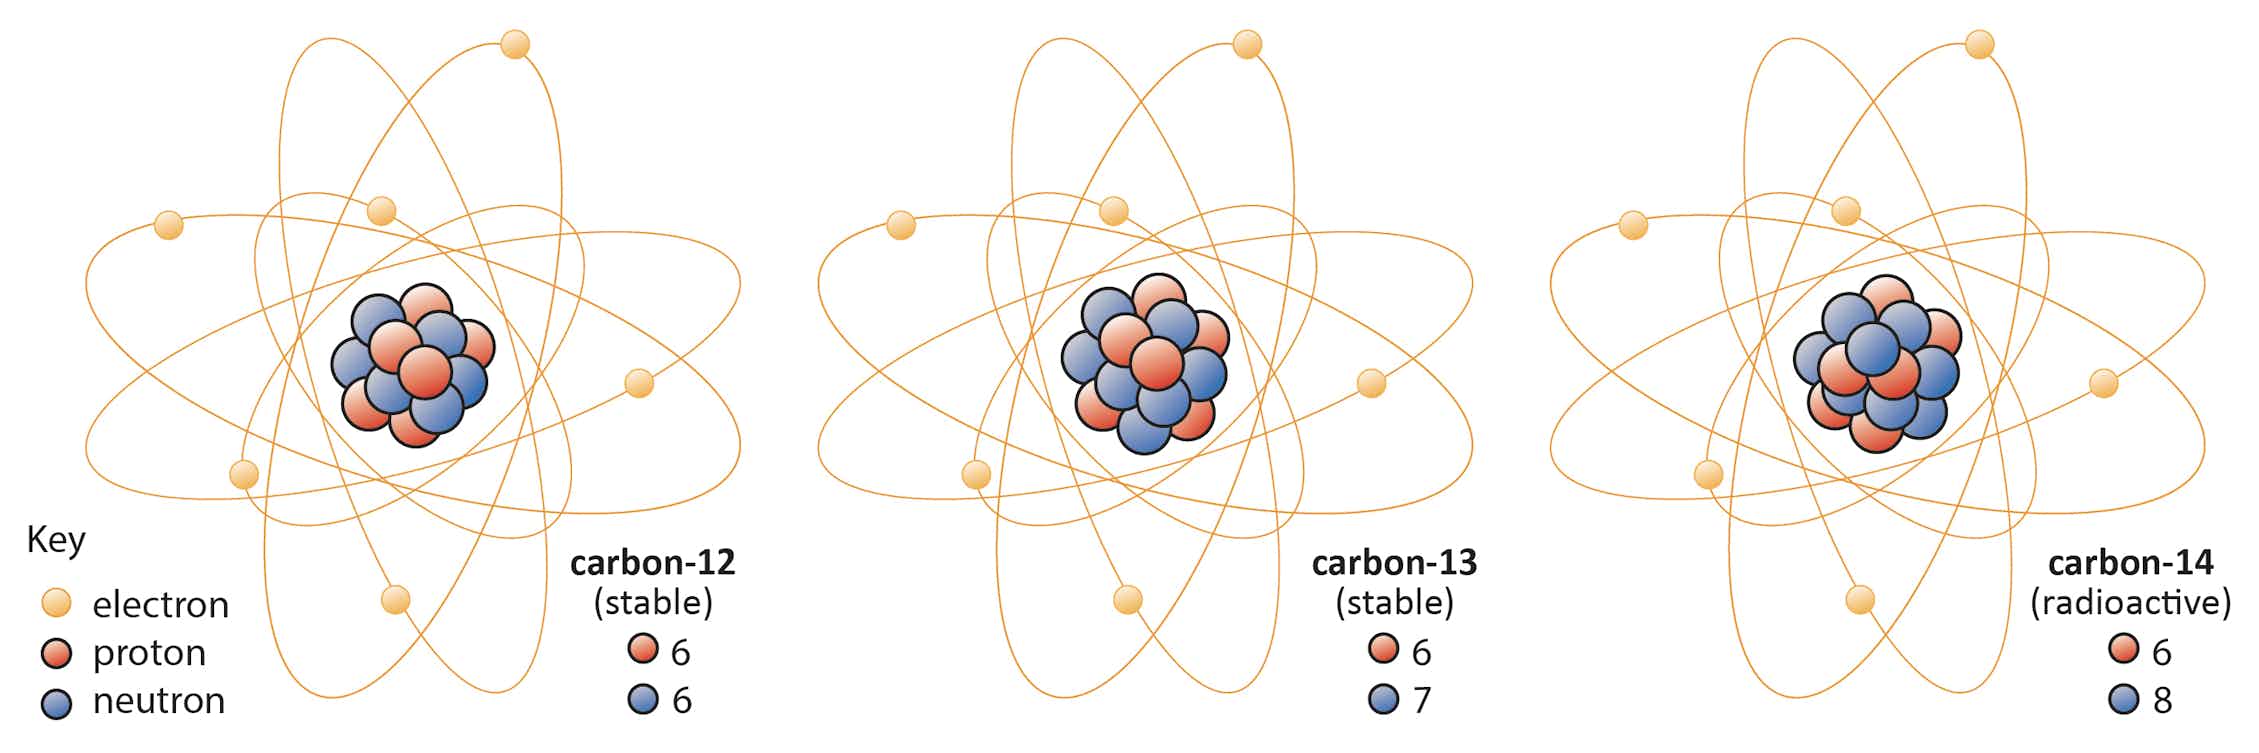 Изотоп углерода 13